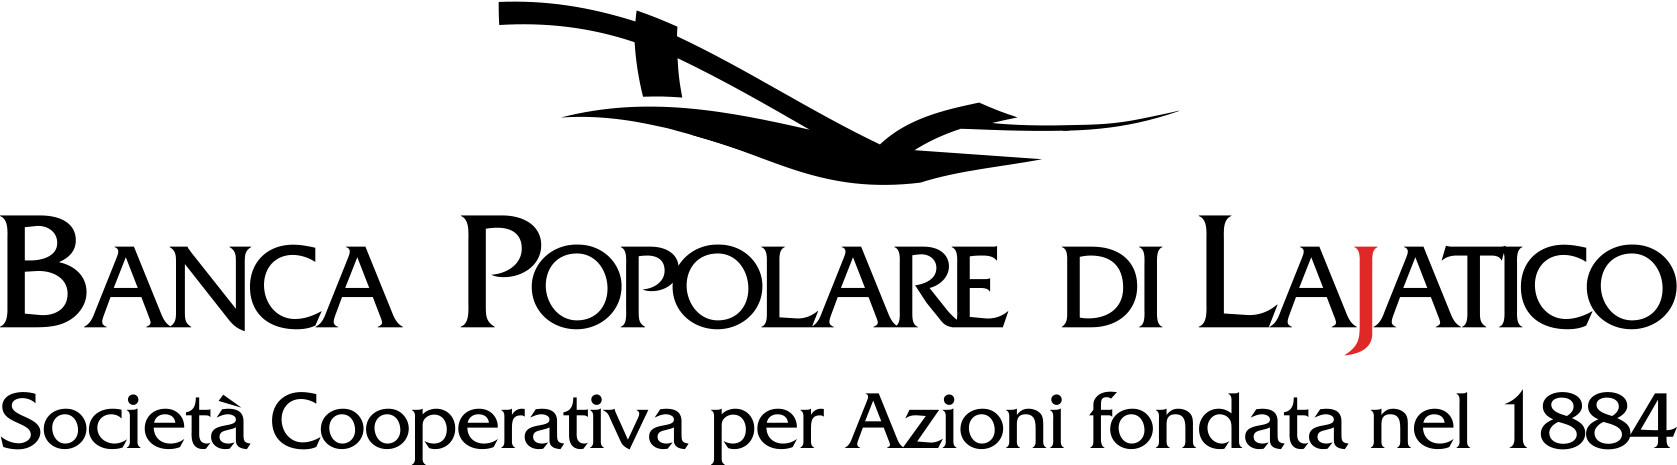 logo banca di lajatico